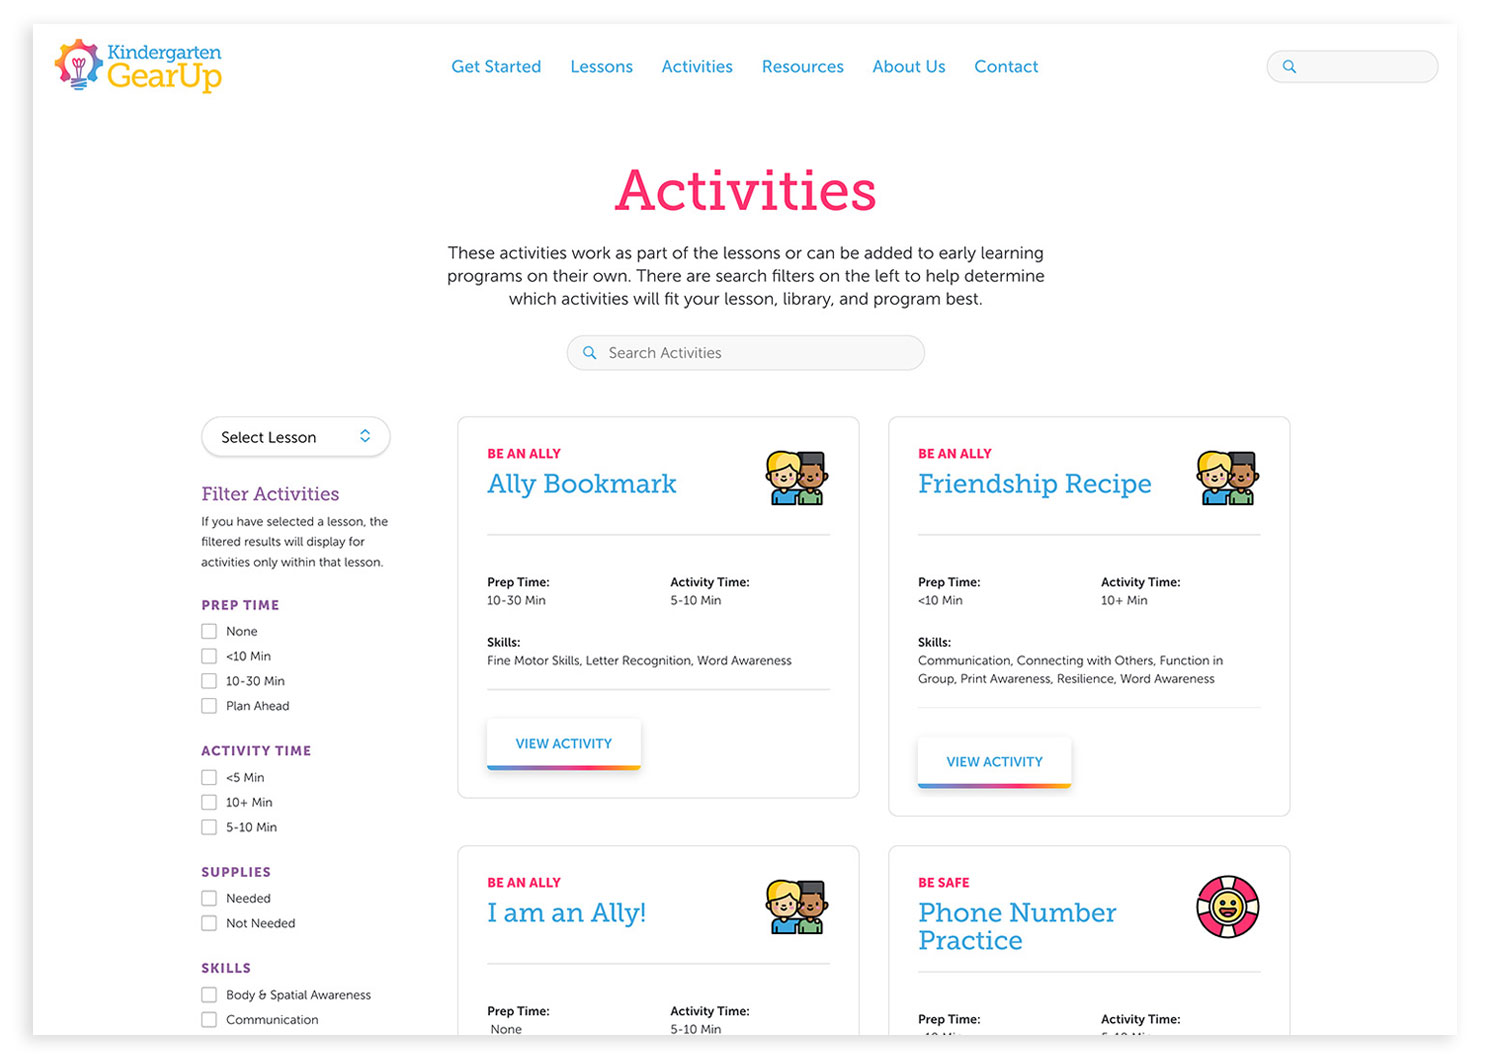 Activities page from the Kindergarten Gear Up website